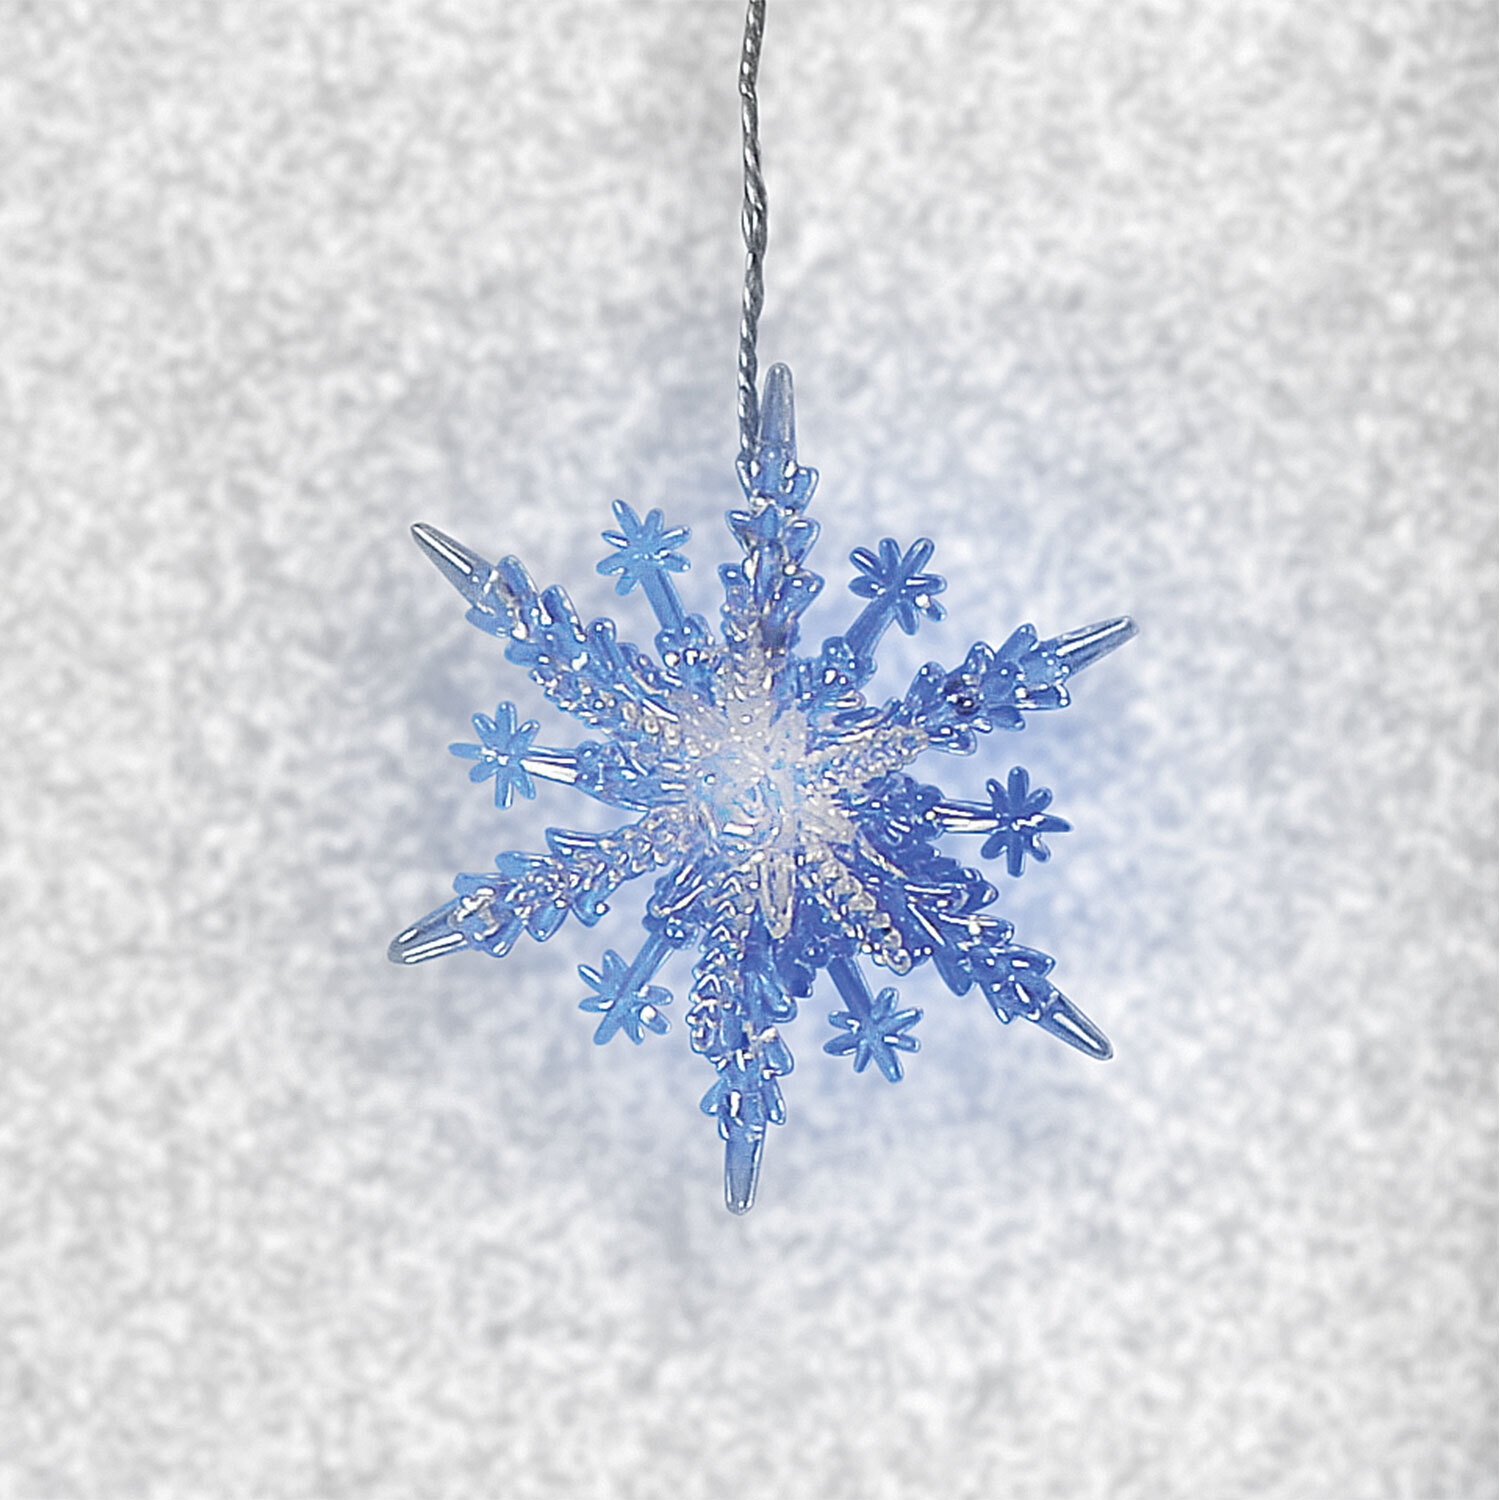 3D Snowflake 8 LED Curtain Light Image 1